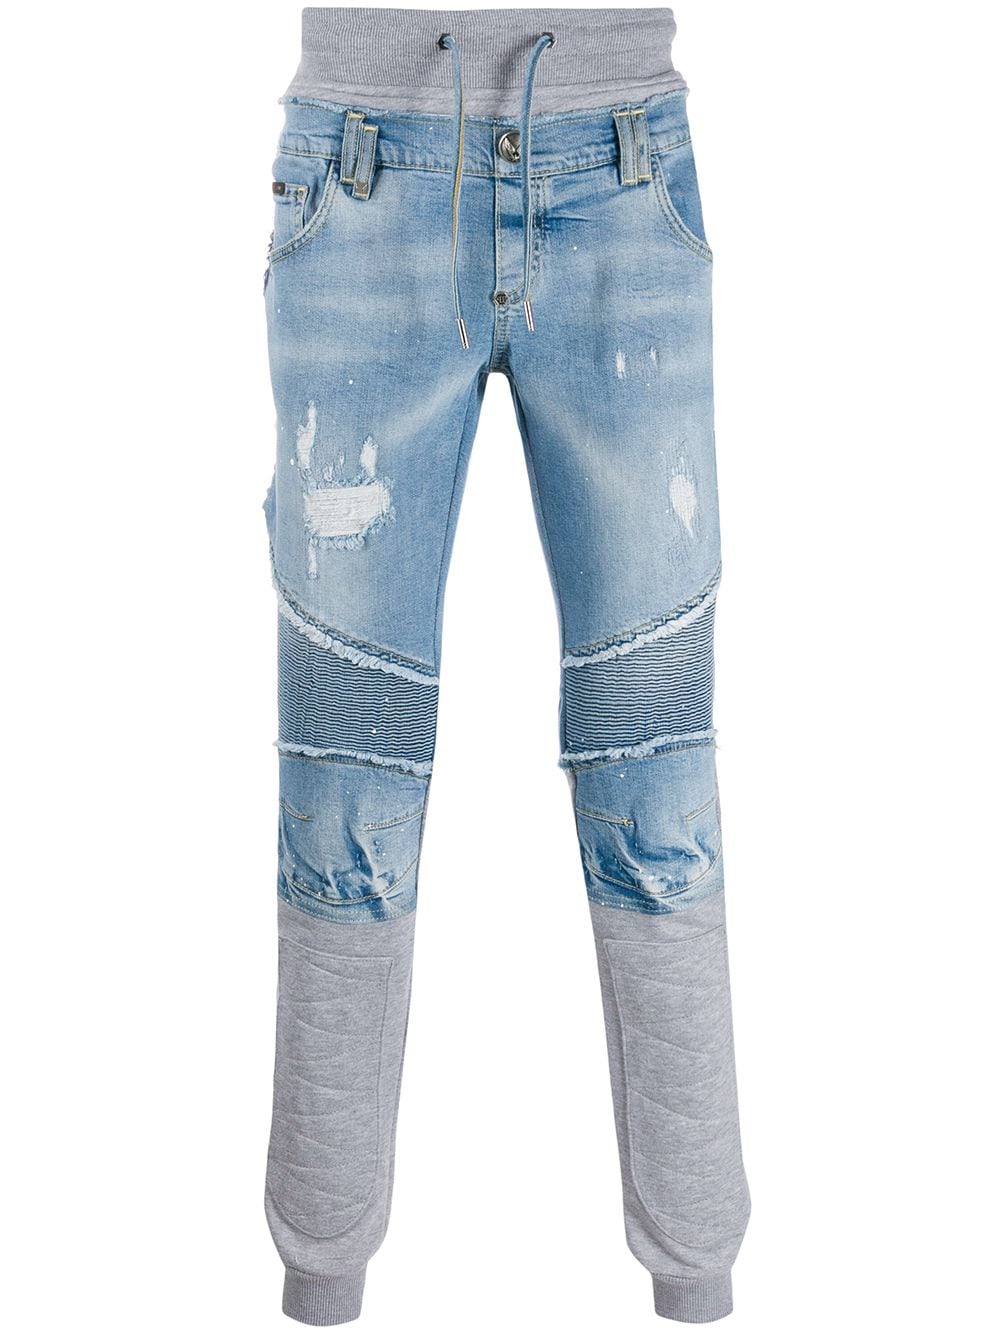 фото Philipp plein джинсы прямого кроя с эффектом потертости